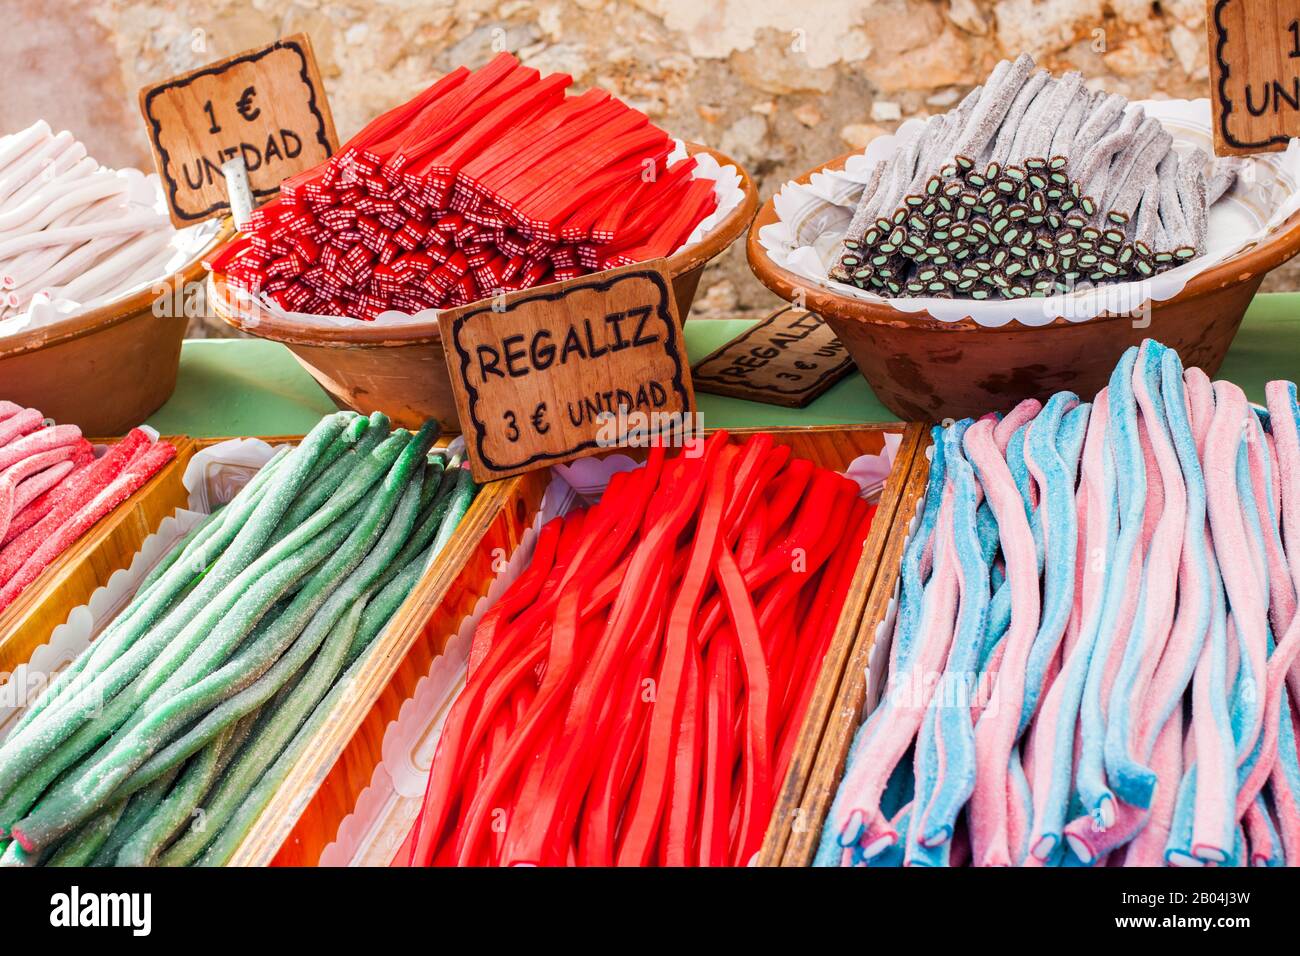 Colorful liquorice sweets for sale on Porreres Market. Regaliz, 3€/unidad (Liquorice, €3/unit). 1€/unidad (€1/unit). Porreres, Majorca, Spain Stock Photo